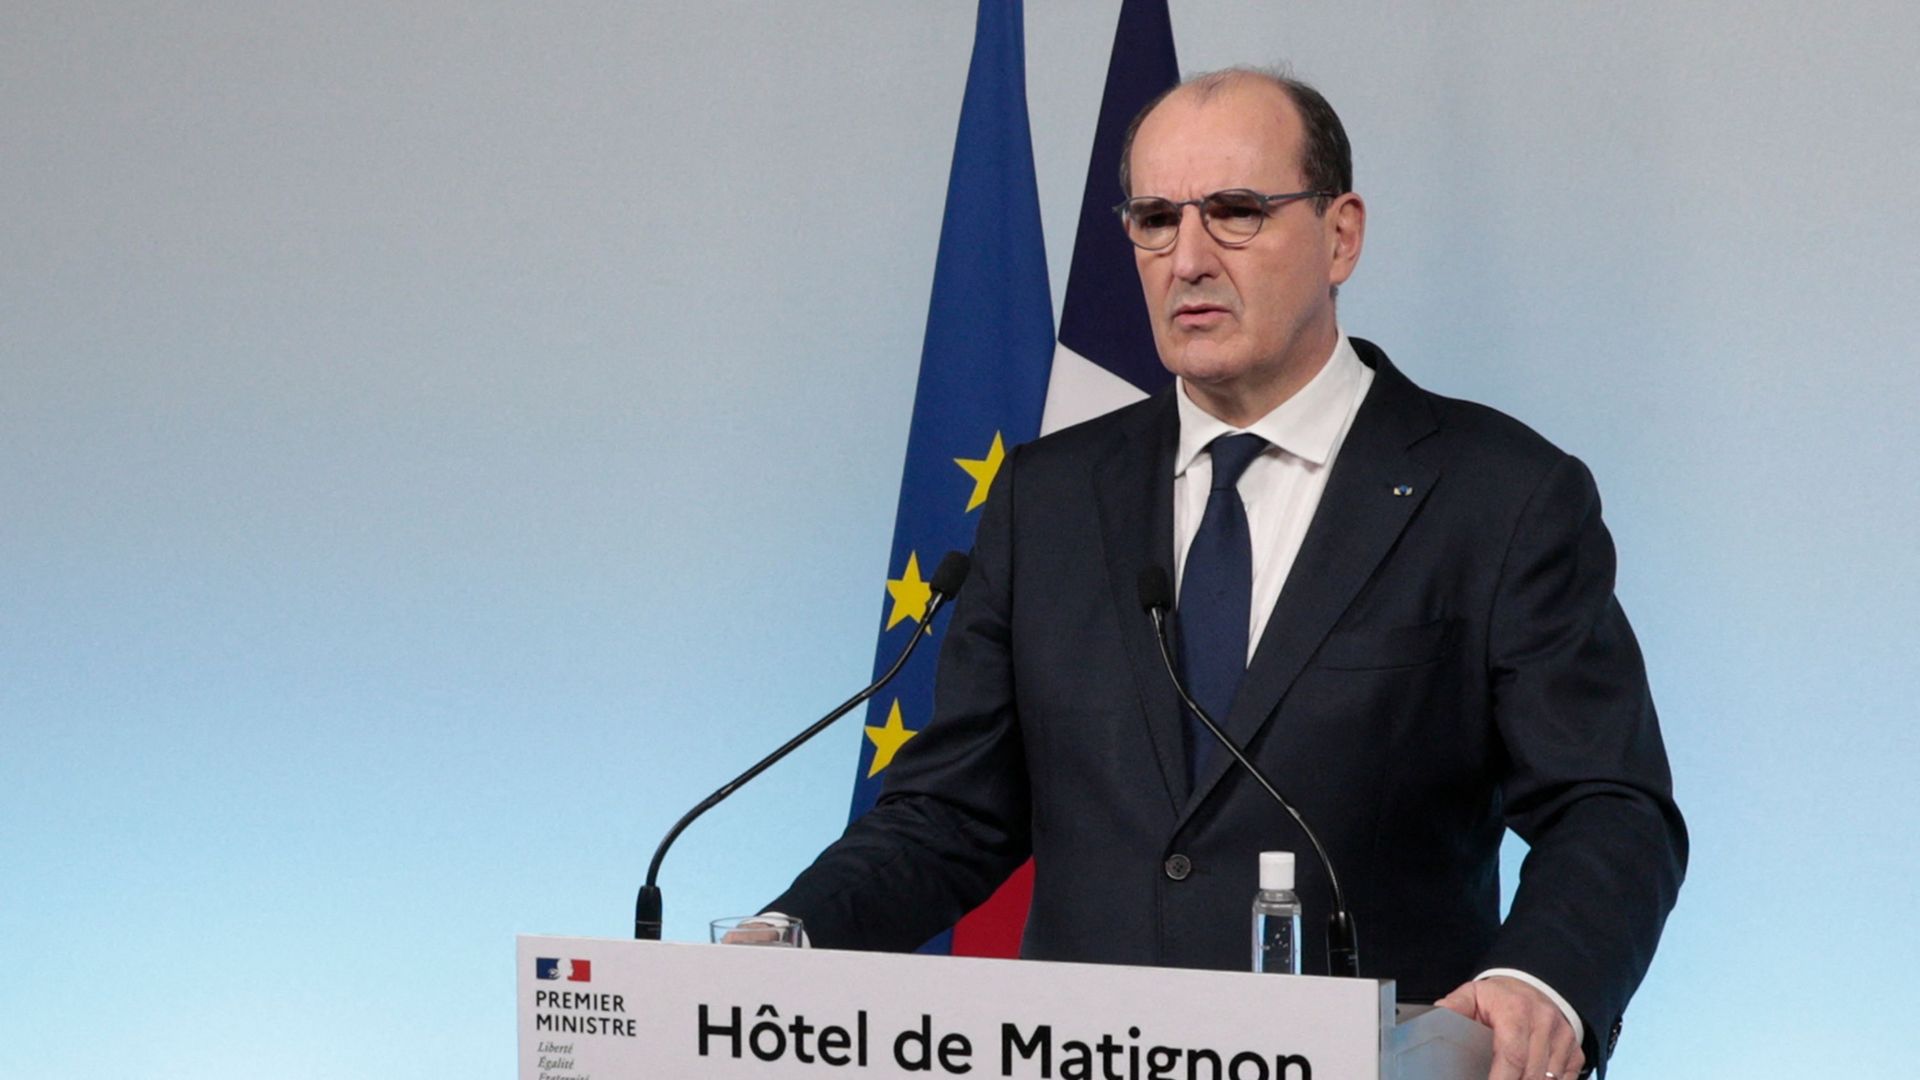 Le Premier ministre Jean Castex lors d’une conférence de presse à Matignon le 17 décembre.